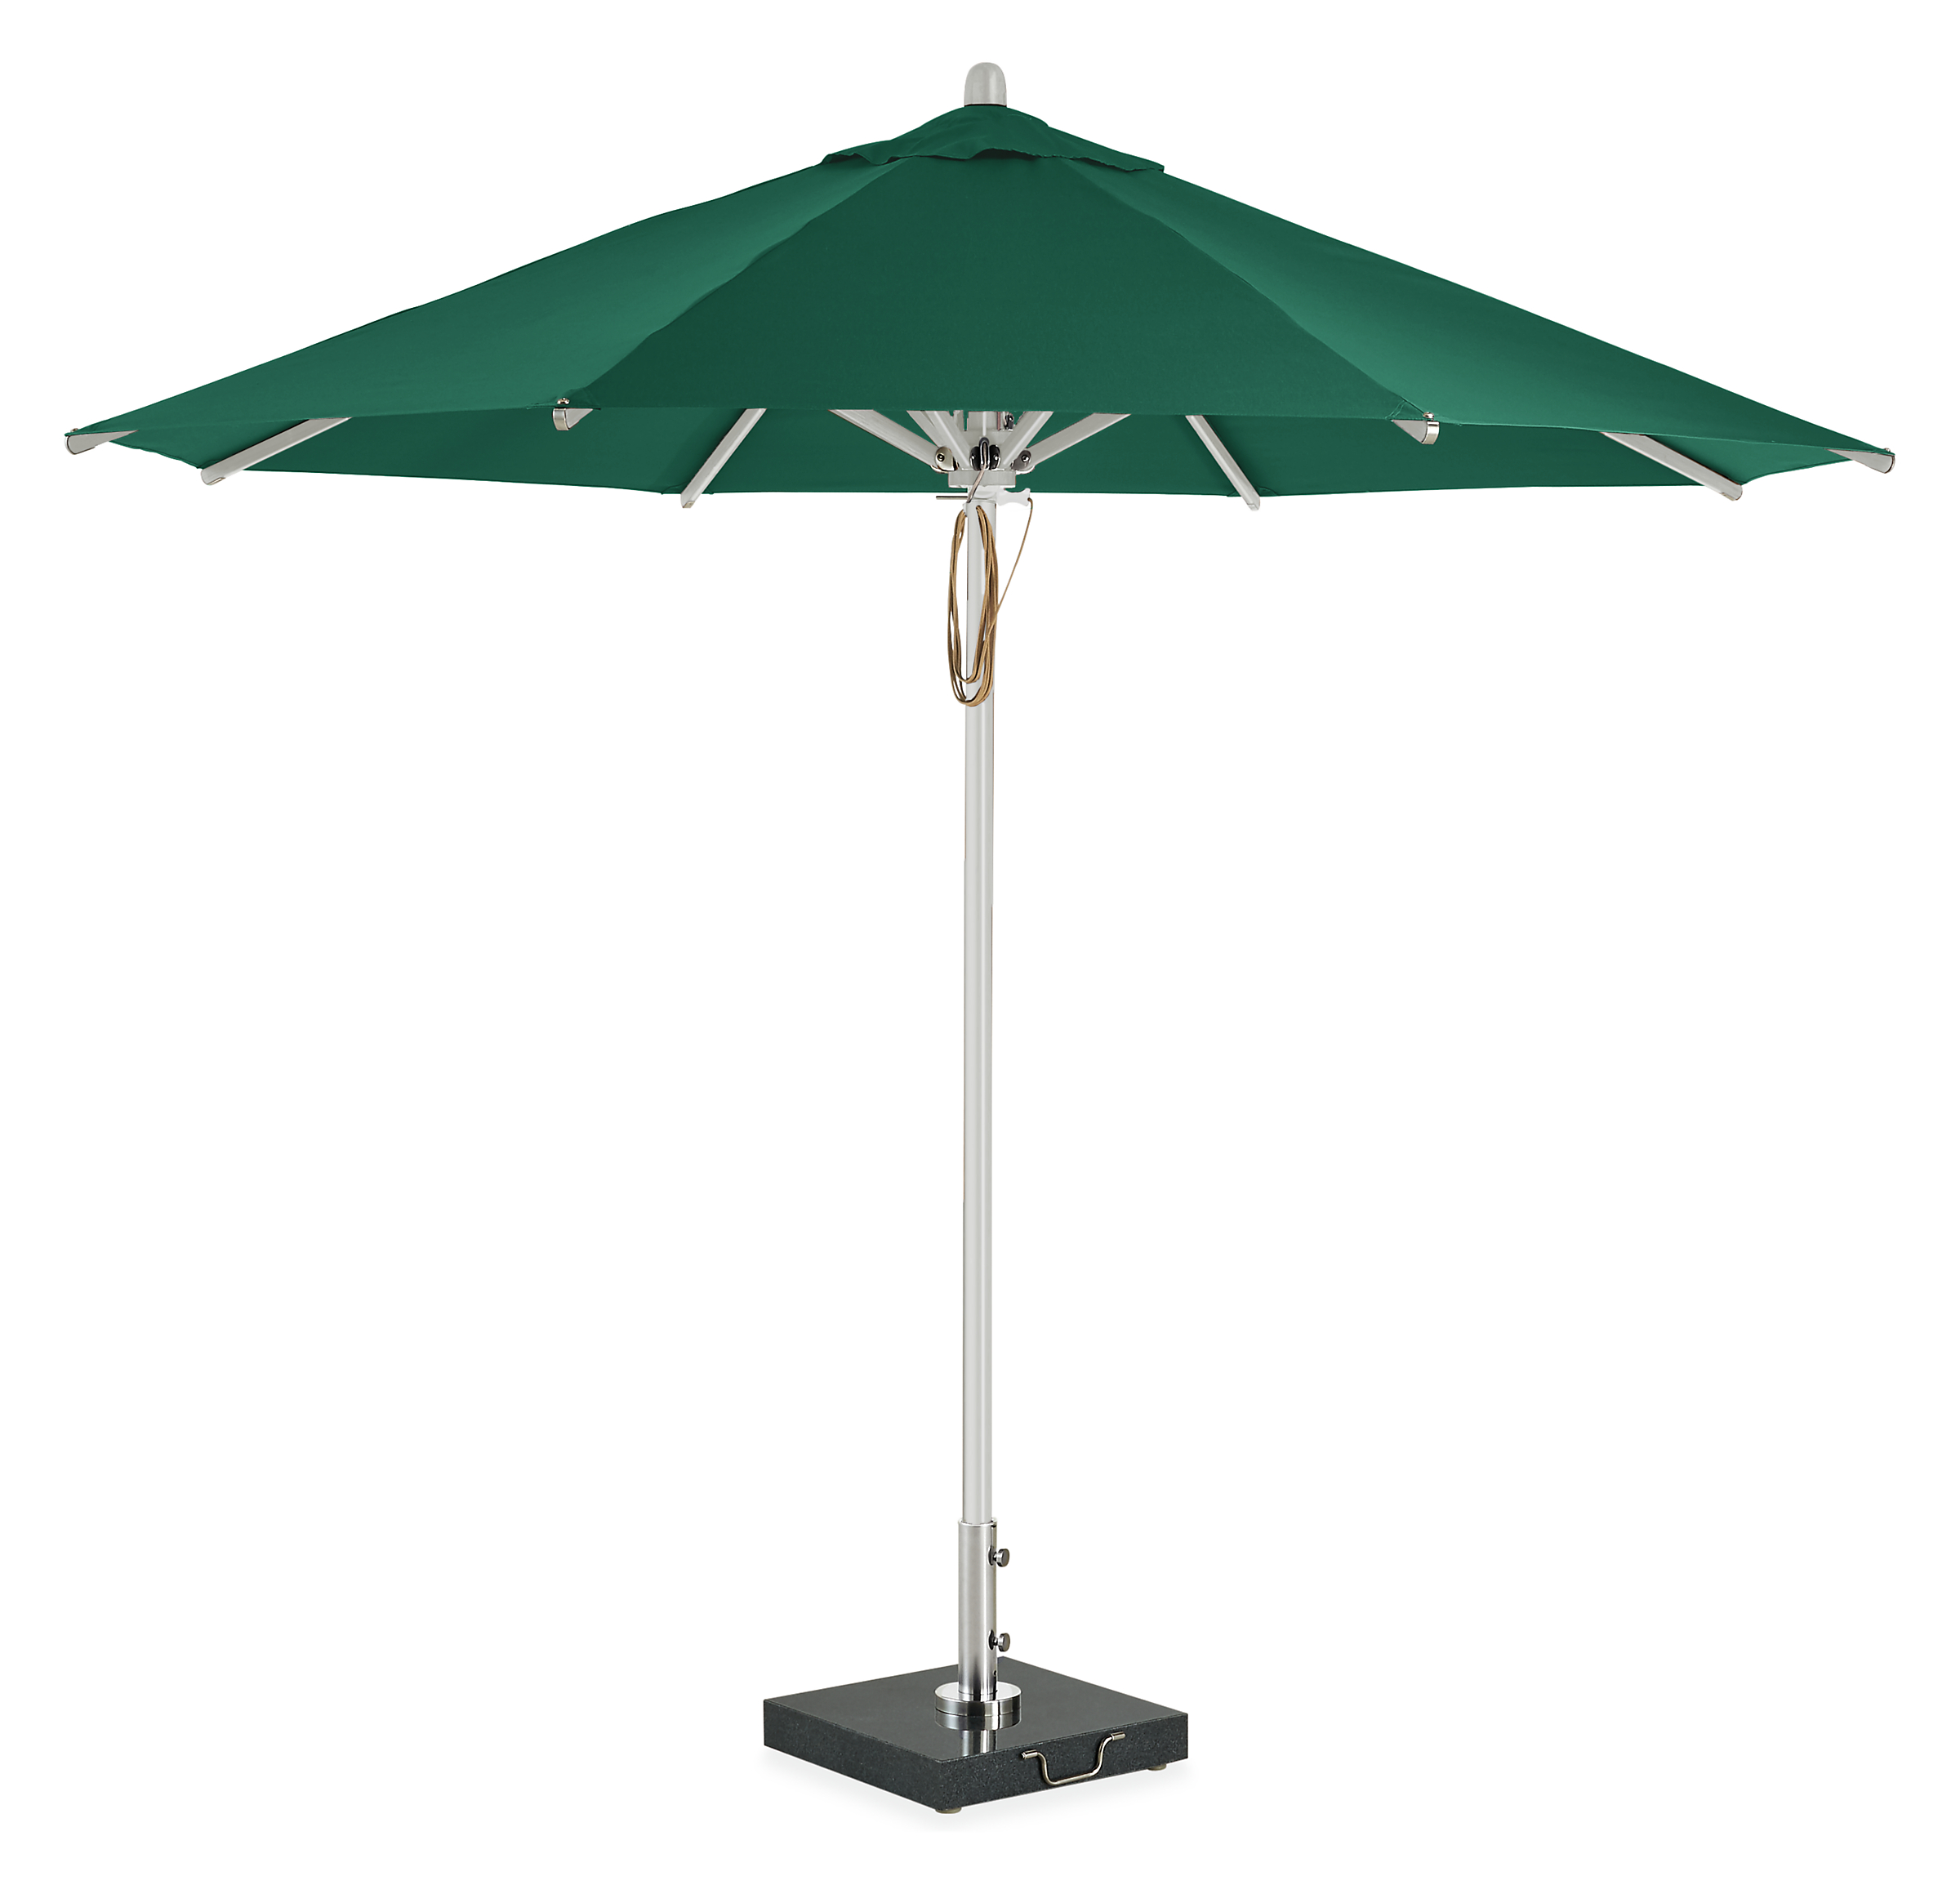 Cirro 10' Patio Umbrella in Green with Aluminum Pole